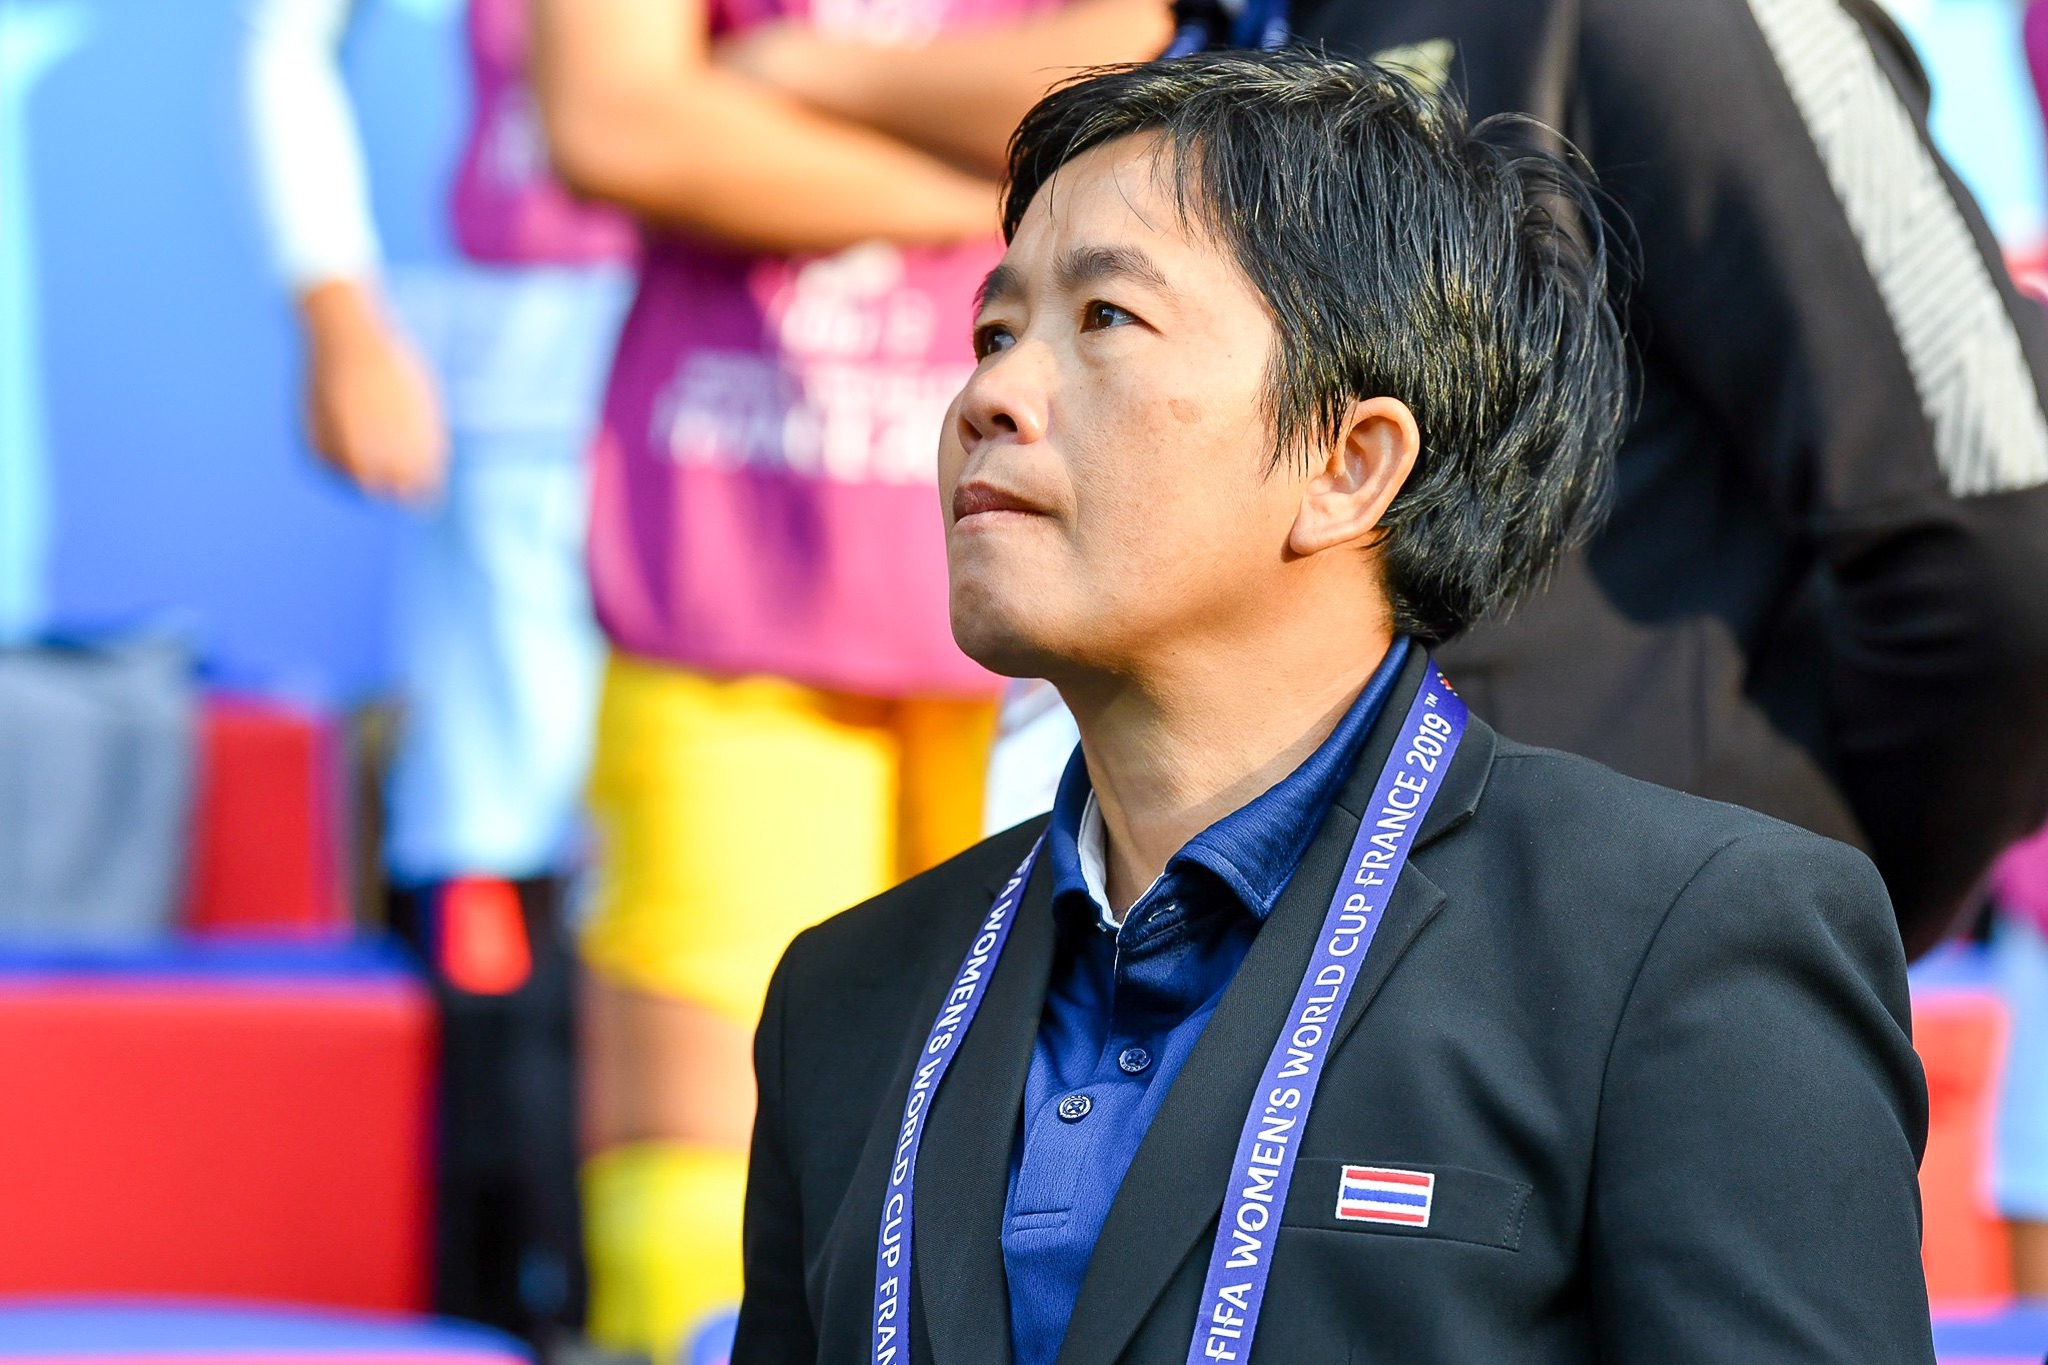 บอลโลกหญิง 2019 ฟุตบอลหญิงทีมชาติไทย หนึ่งฤทัย สระทองเวียน